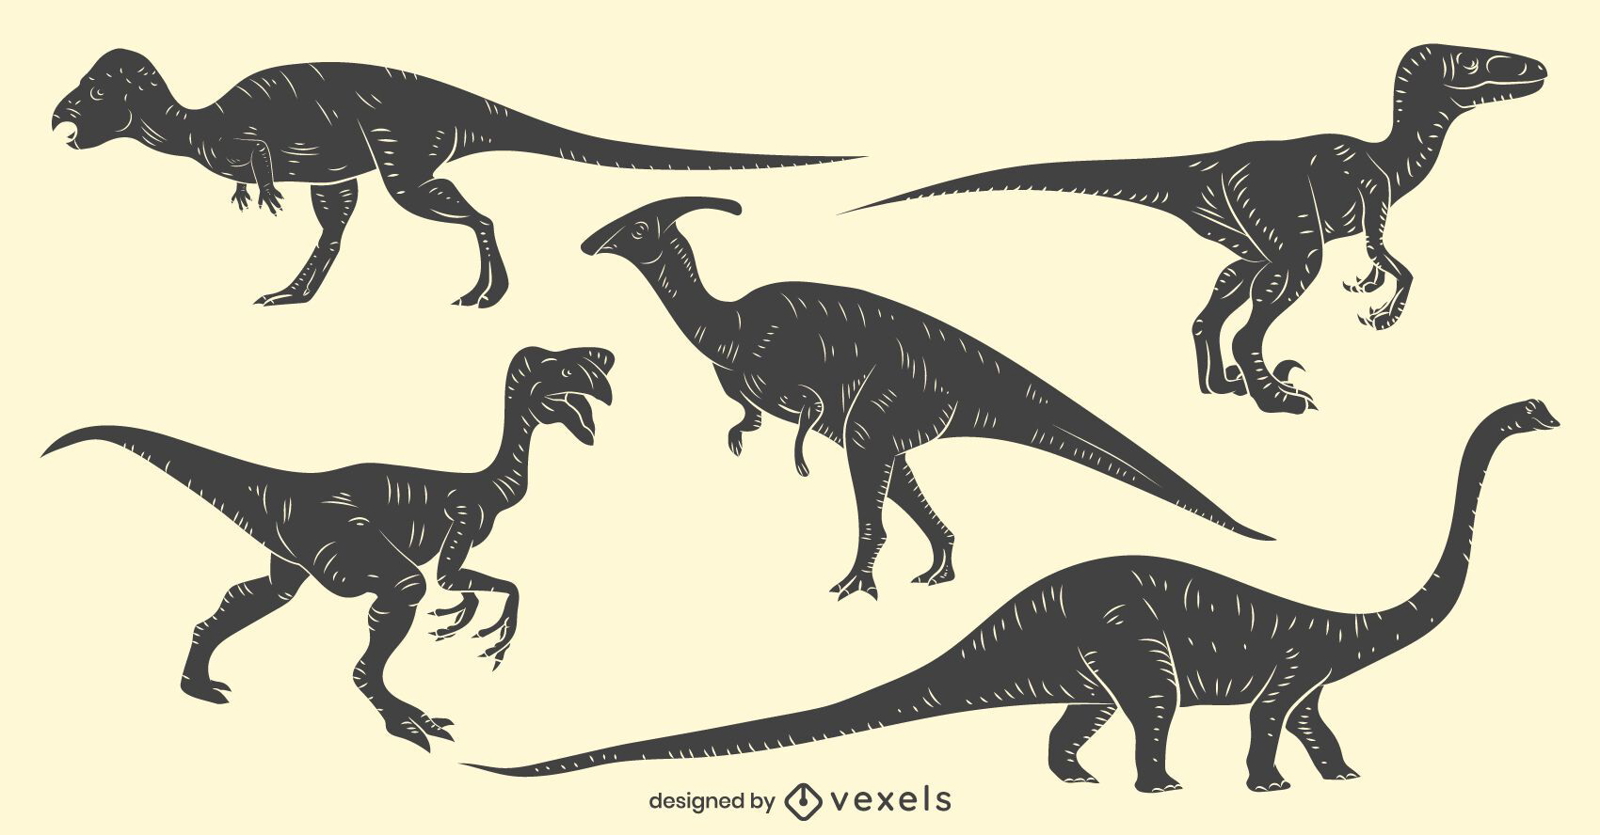 Dinosaur hand-drawn set